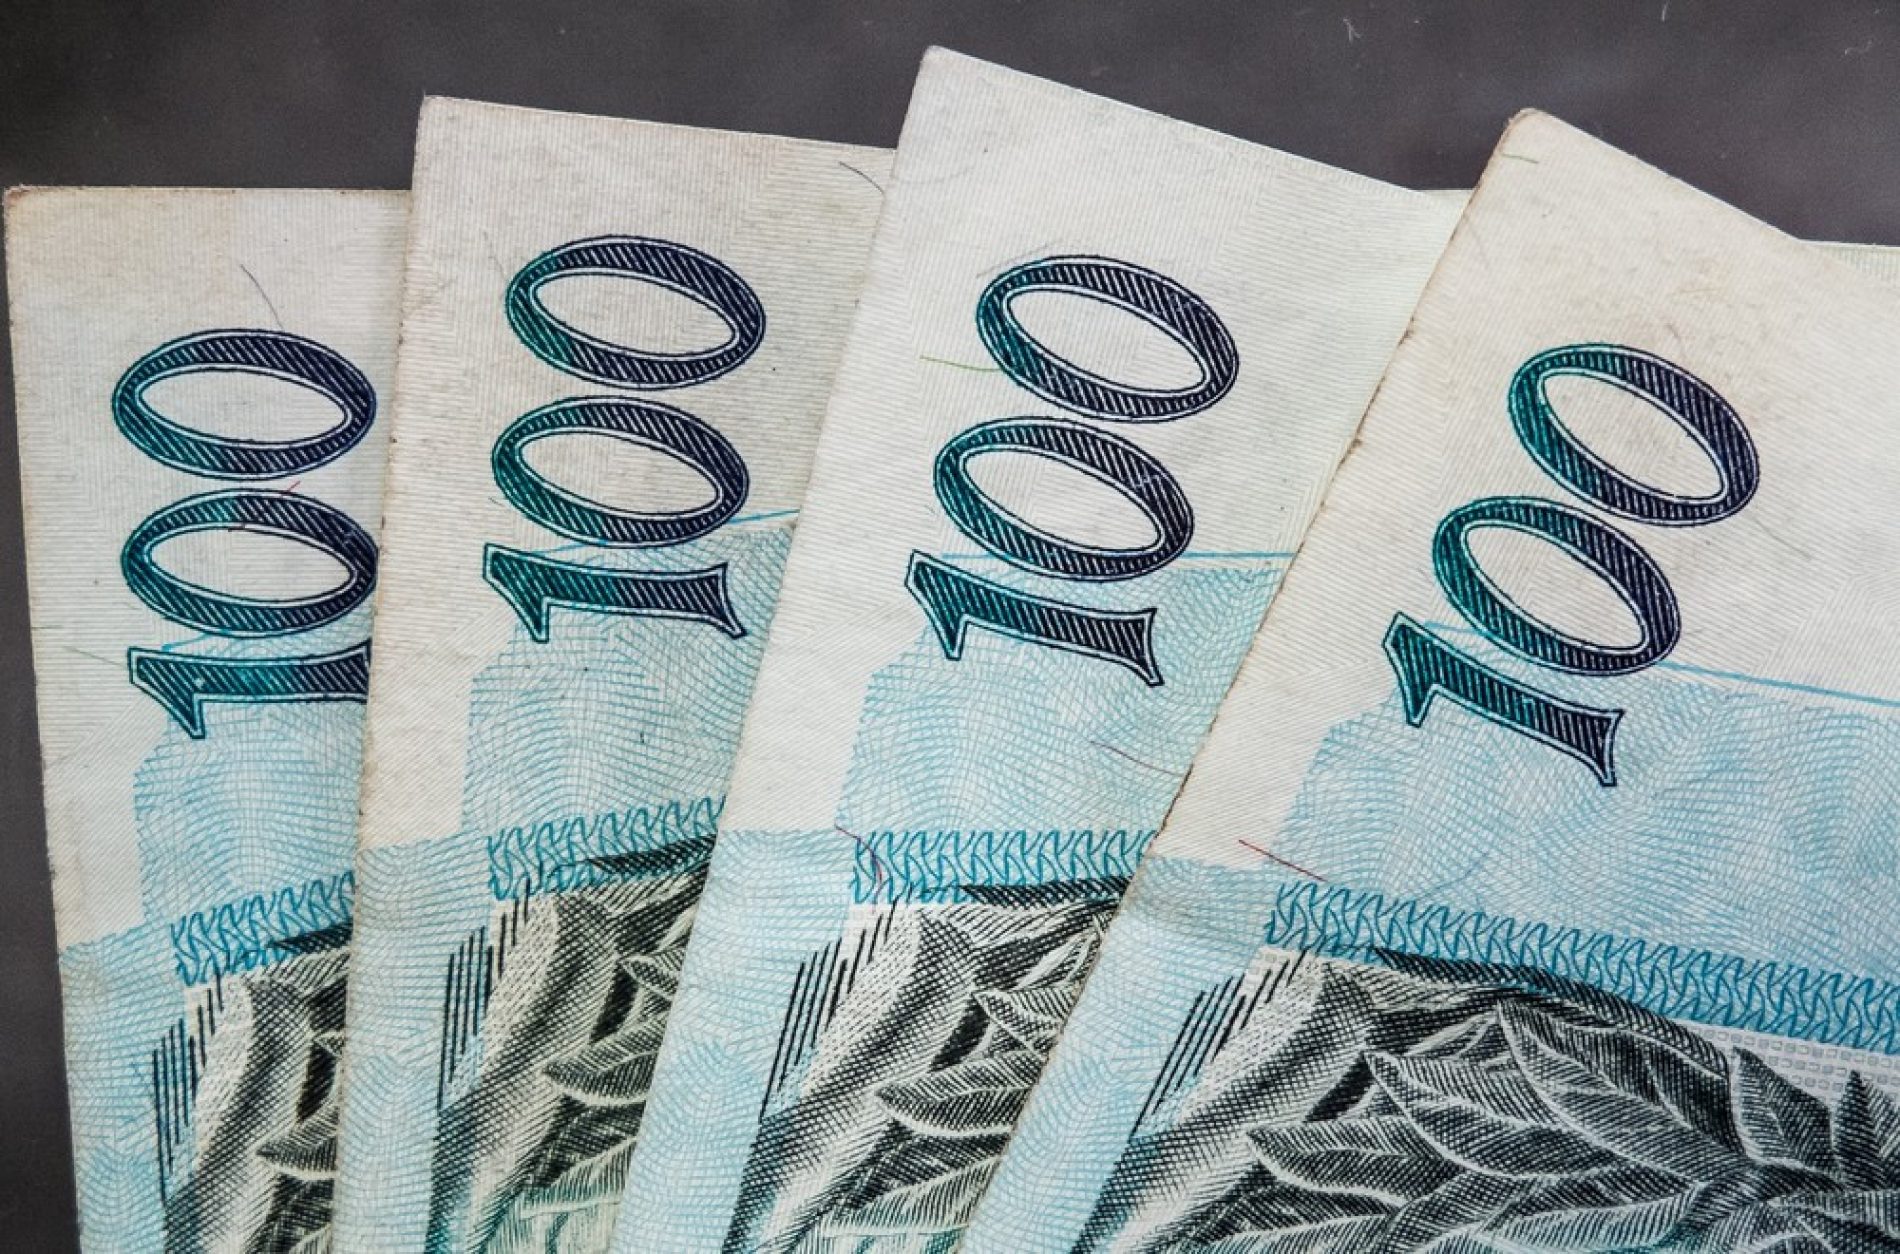 BARRETOS: Economista tem quase 40 mil reais descontados indevidamente em sua conta corrente